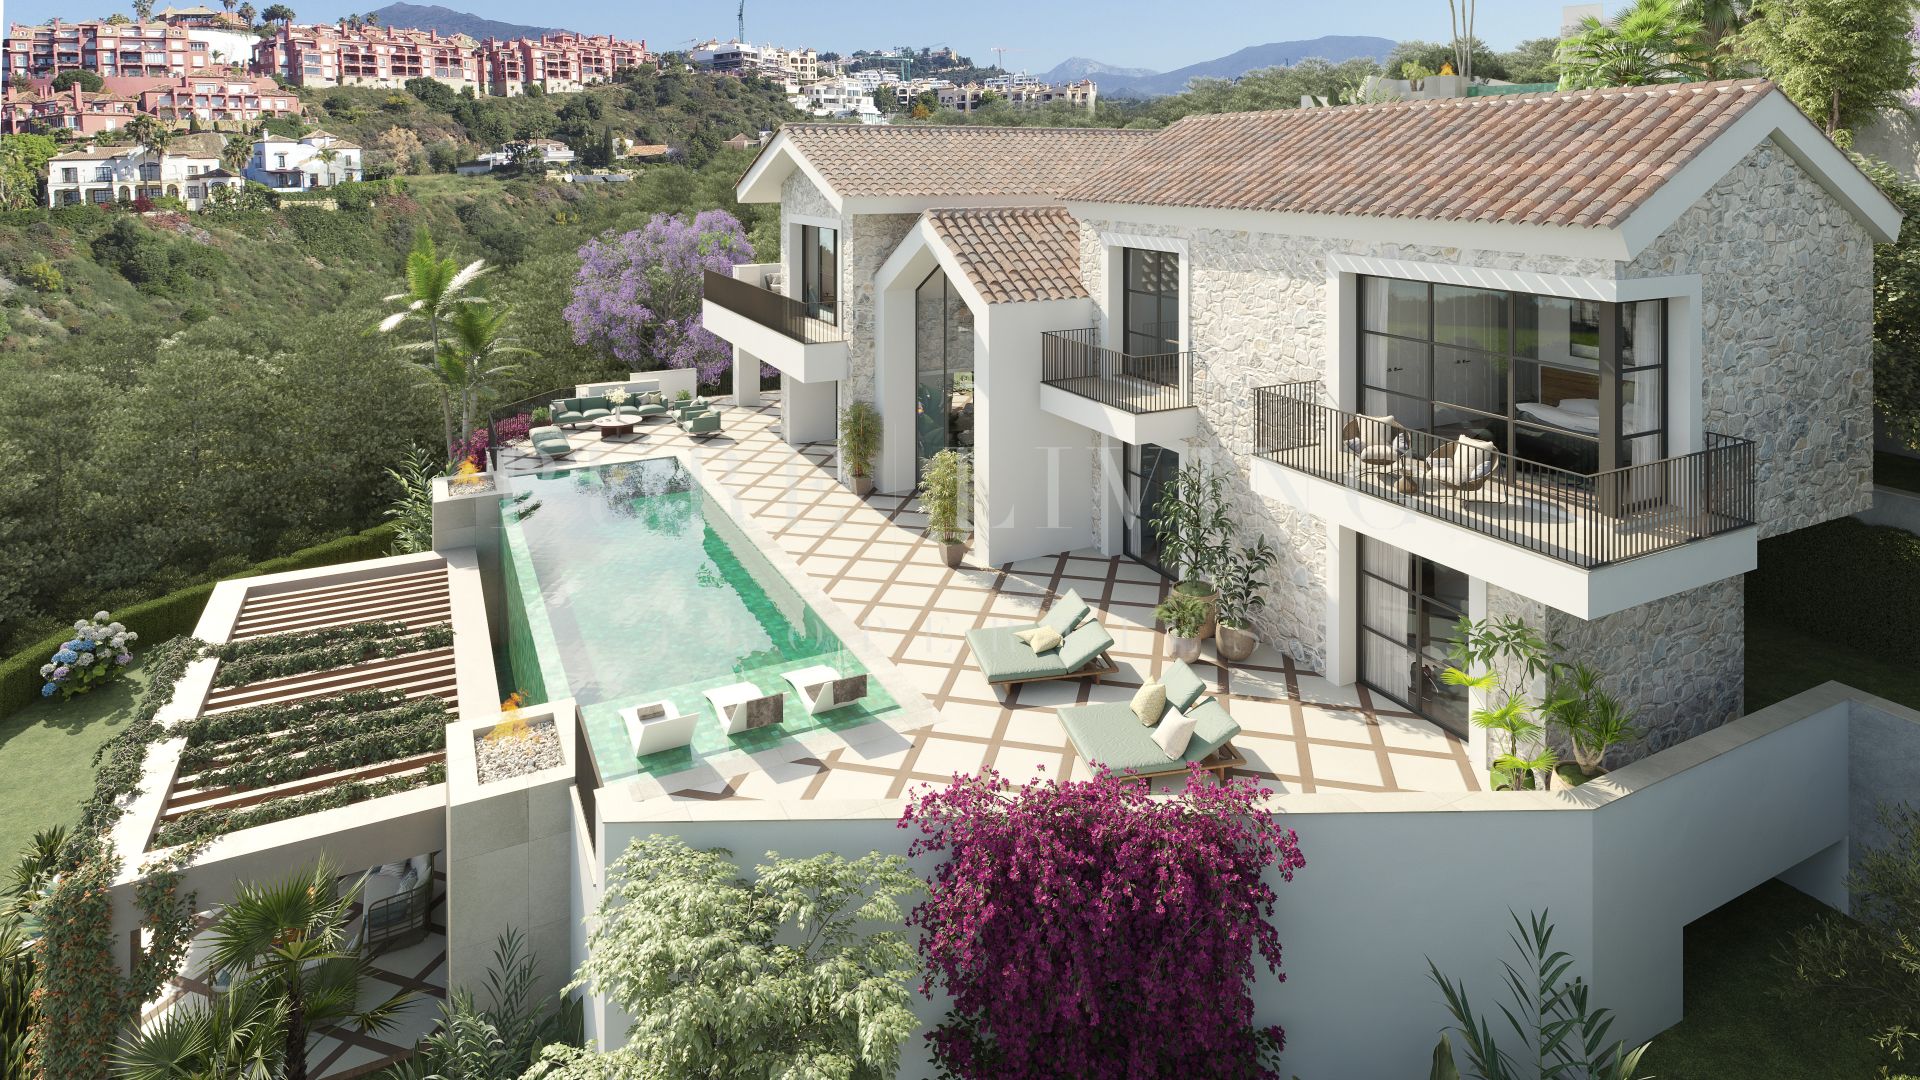 Trois villas de style hacienda au cœur de The Hills, une communauté fermée emblématique de La Quinta